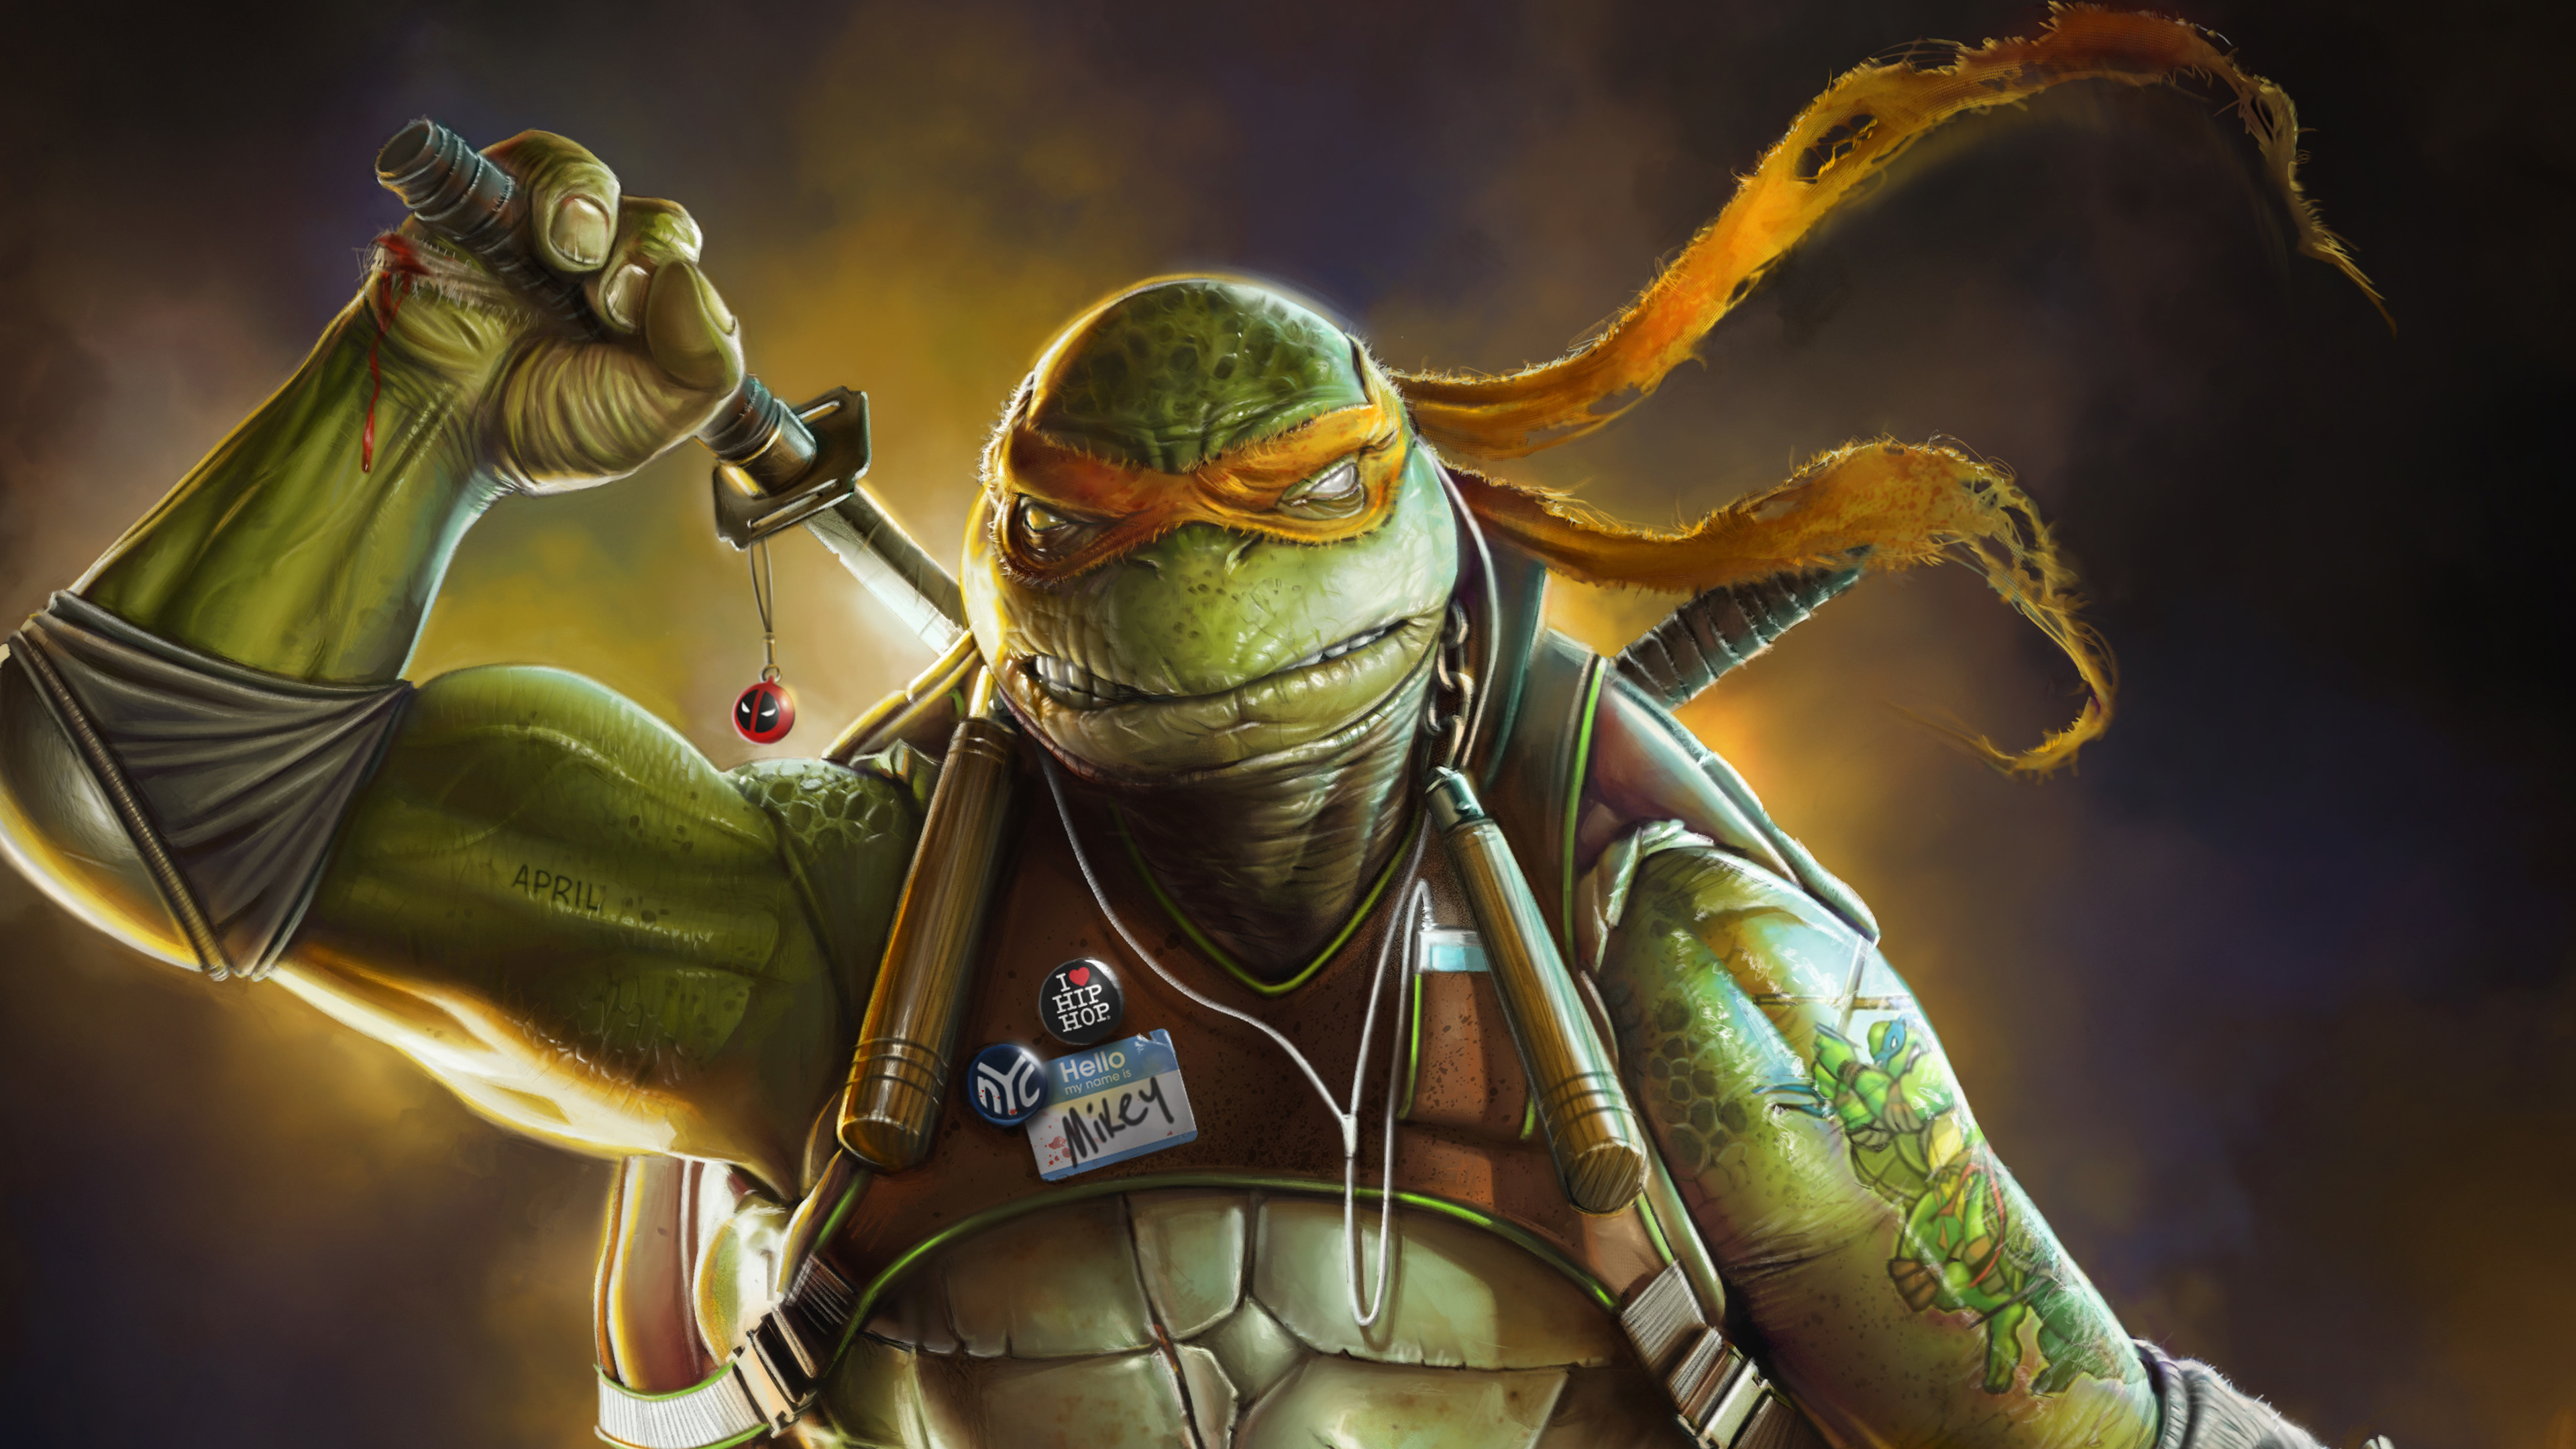 Teenage Mutant Ninja Turtles Phone iPhone 11 Wallpapers Free Download